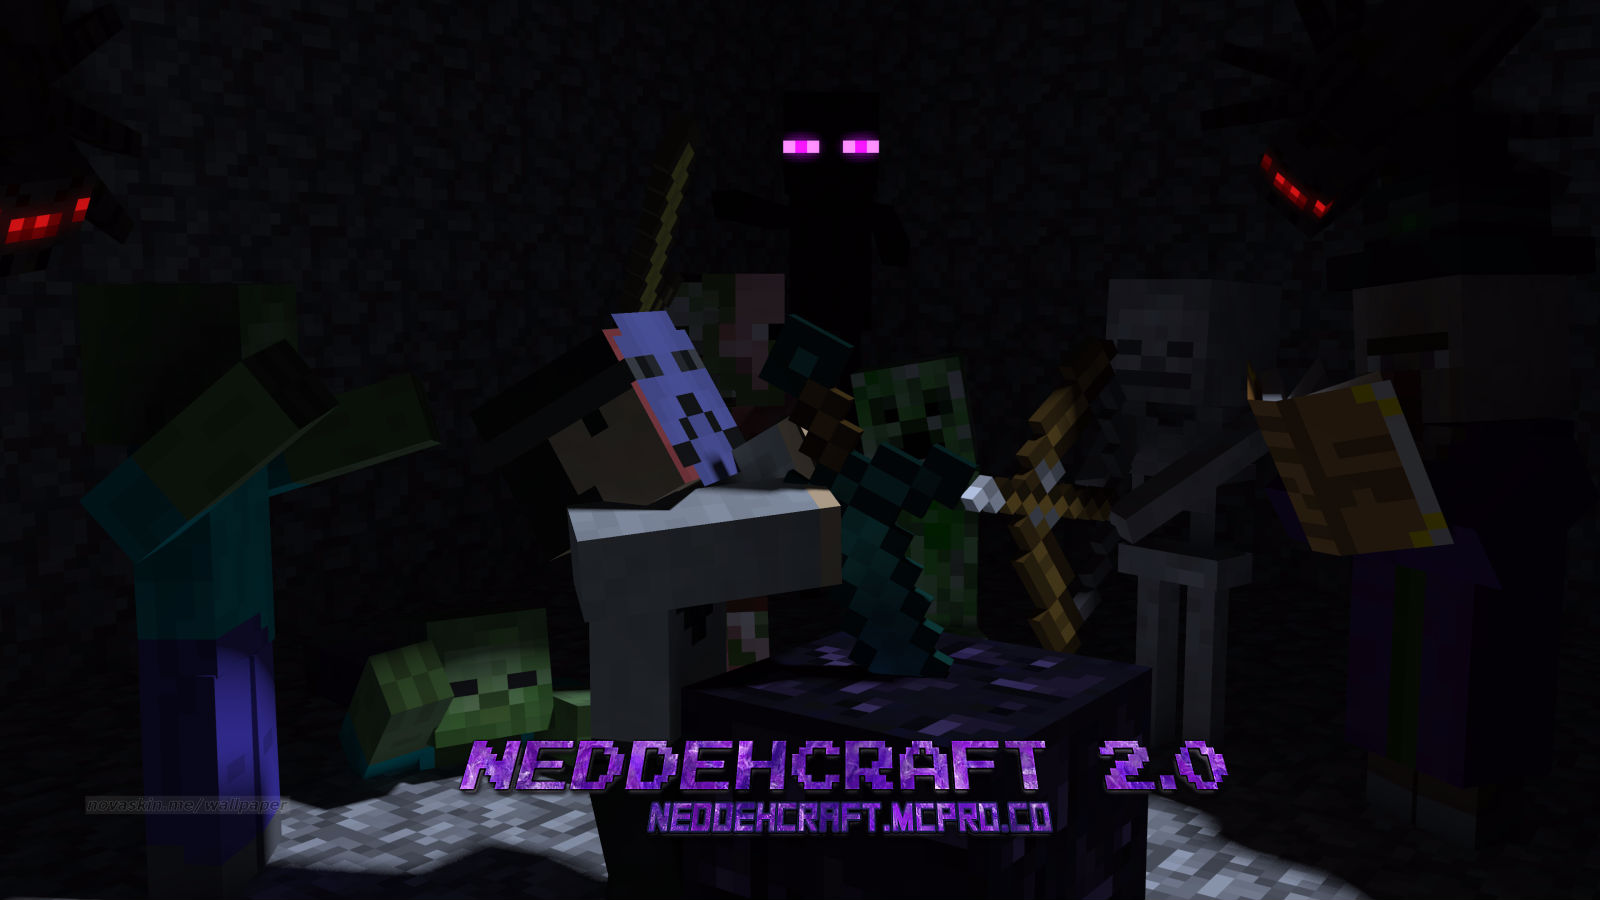 NeddehCraft Forums Poster.jpg